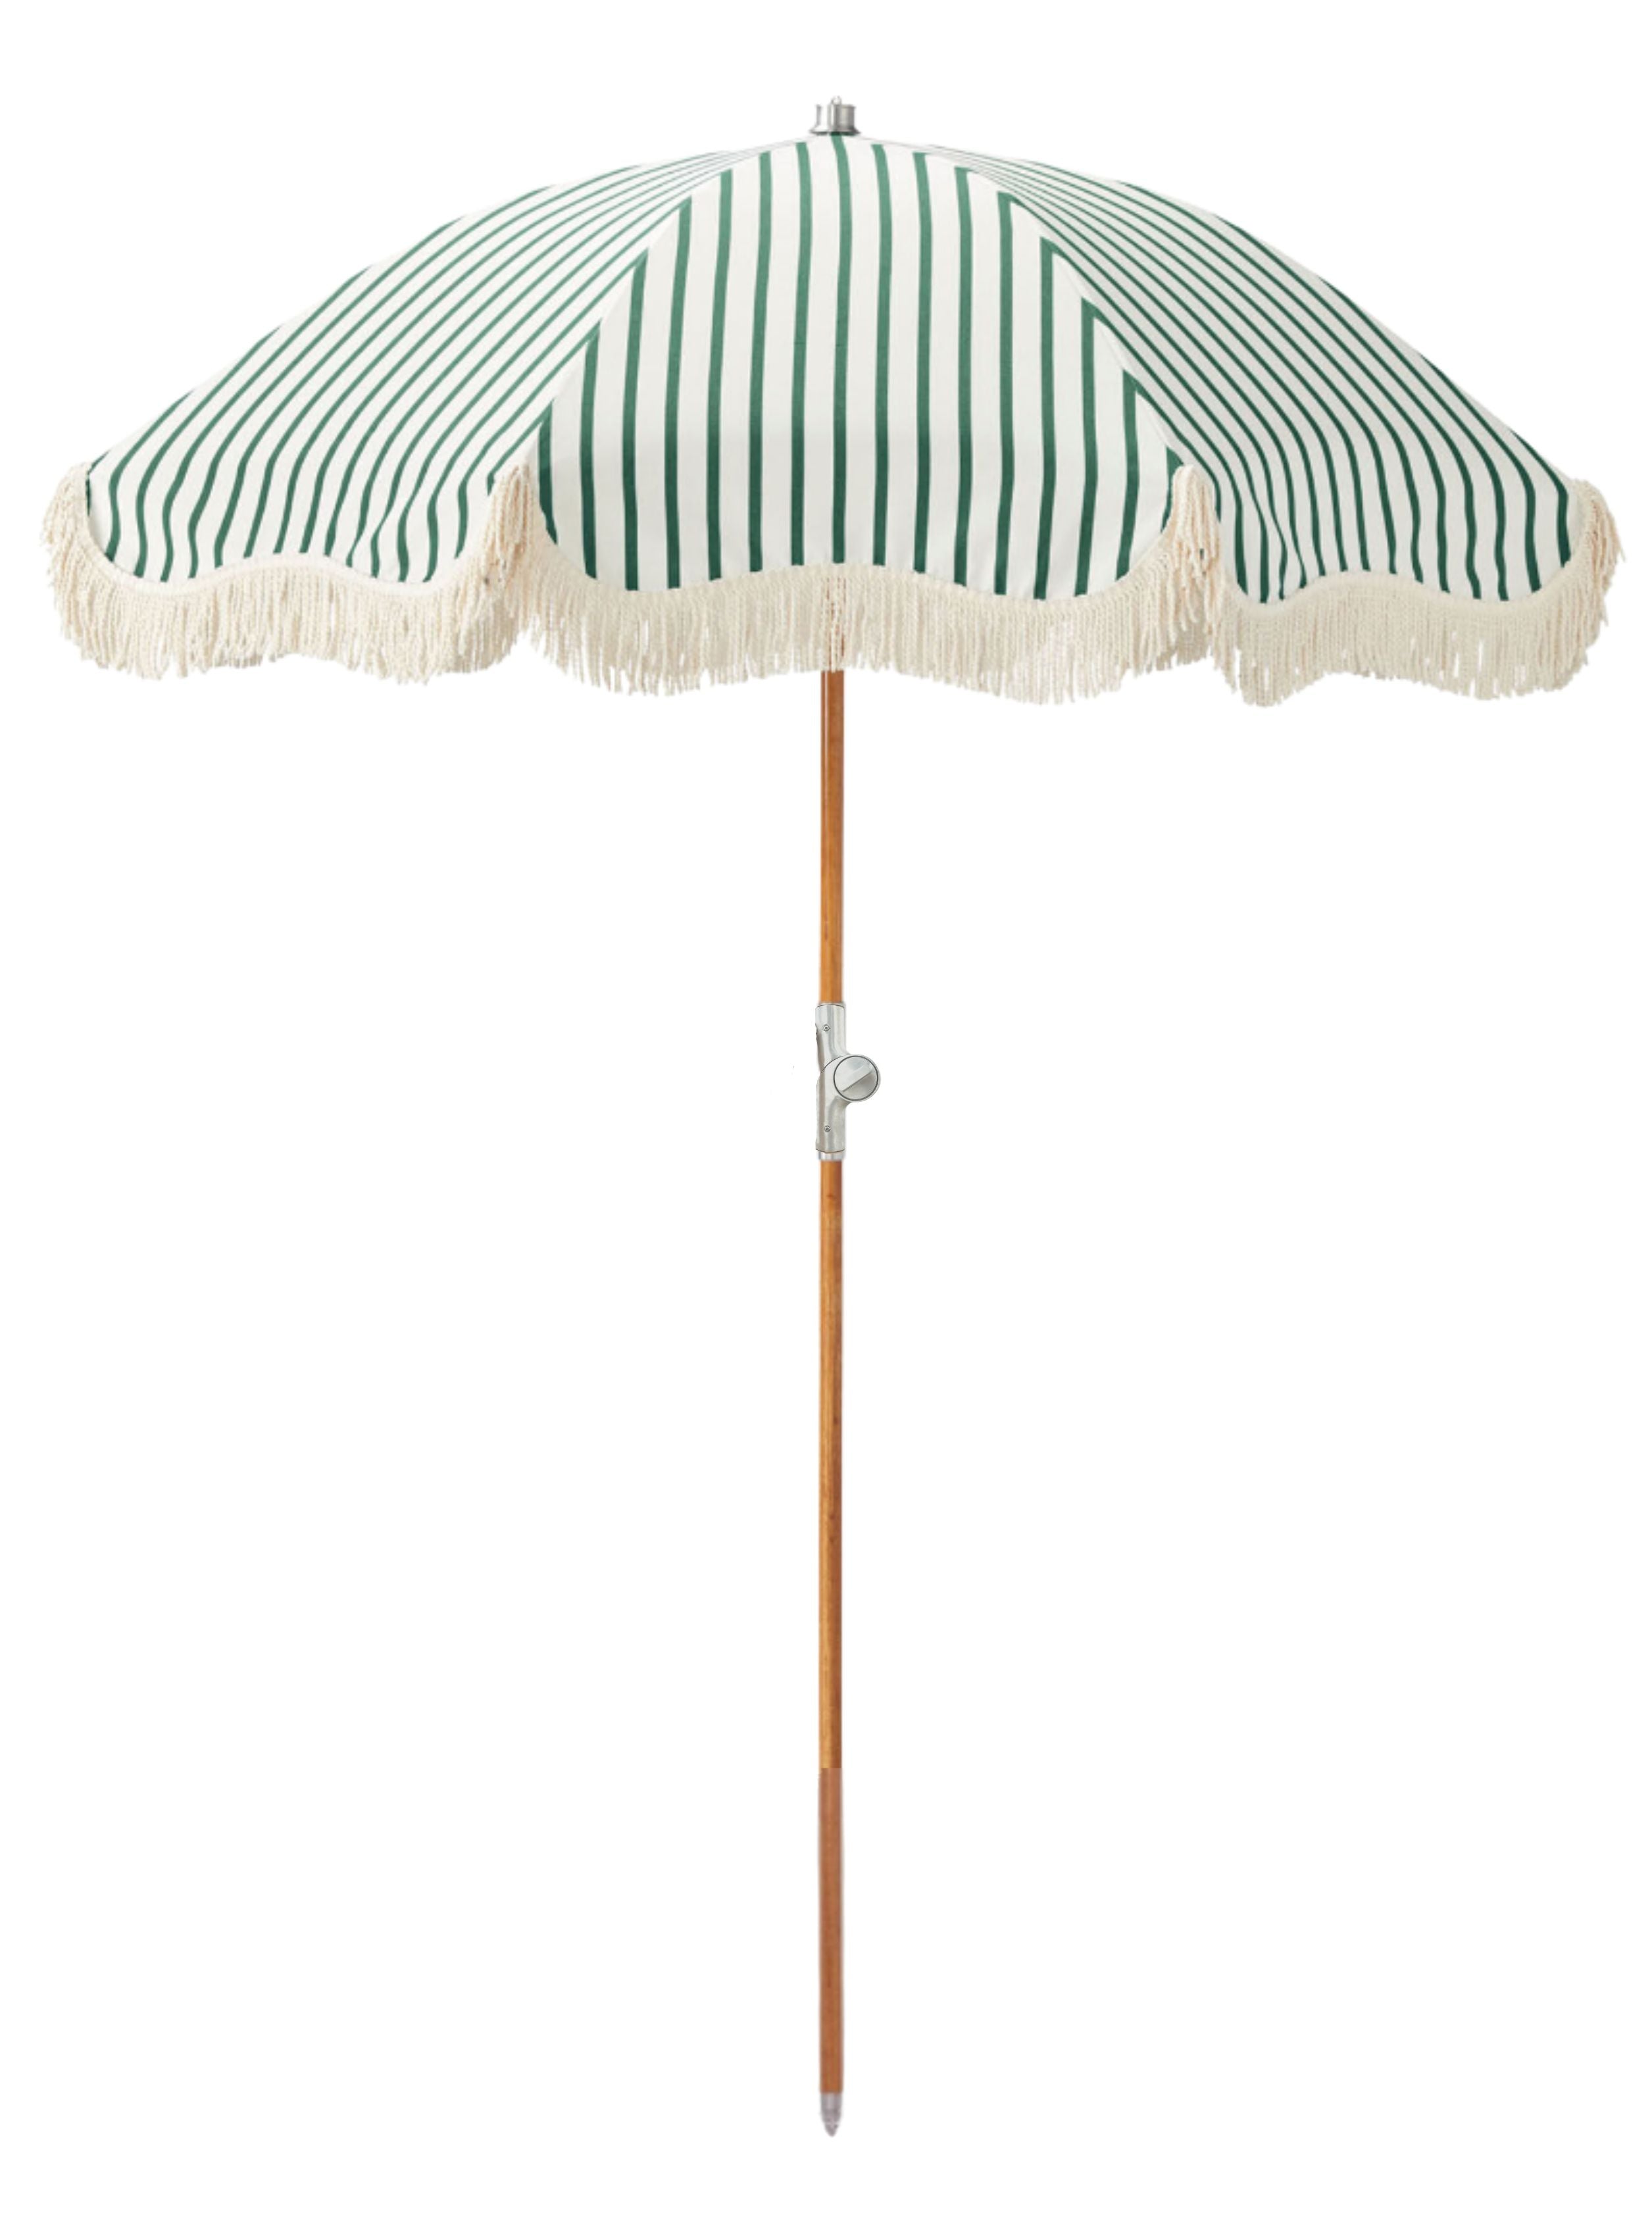 The Wilderness Premium Umbrella